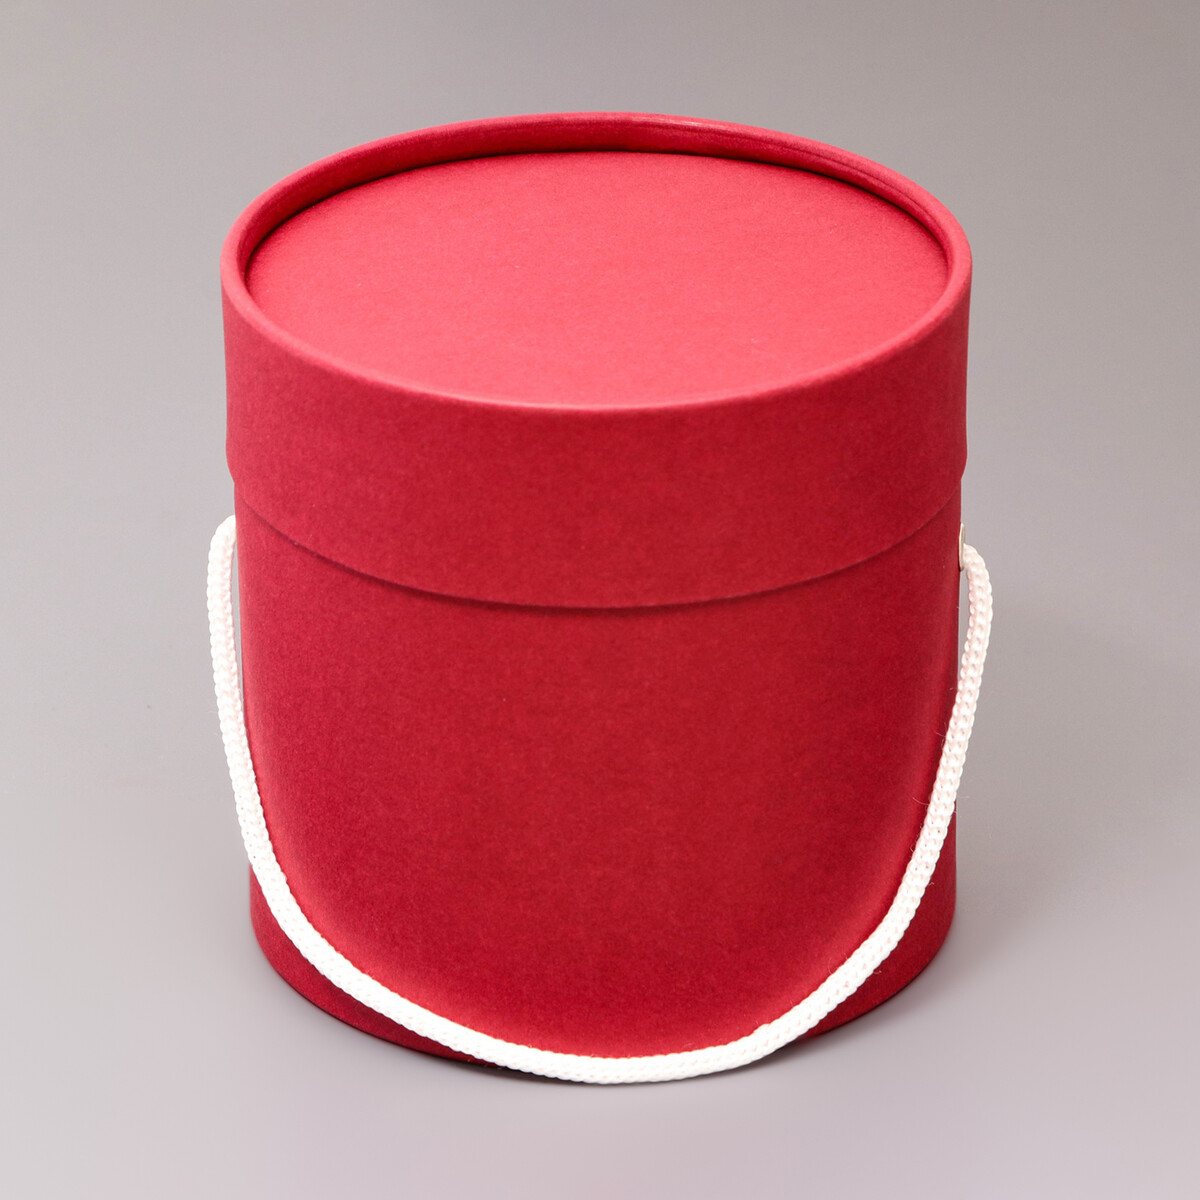 Подарочная коробка, круглая, бордовая,с шнурком, 12 х 12 см подарочная коробка круглая